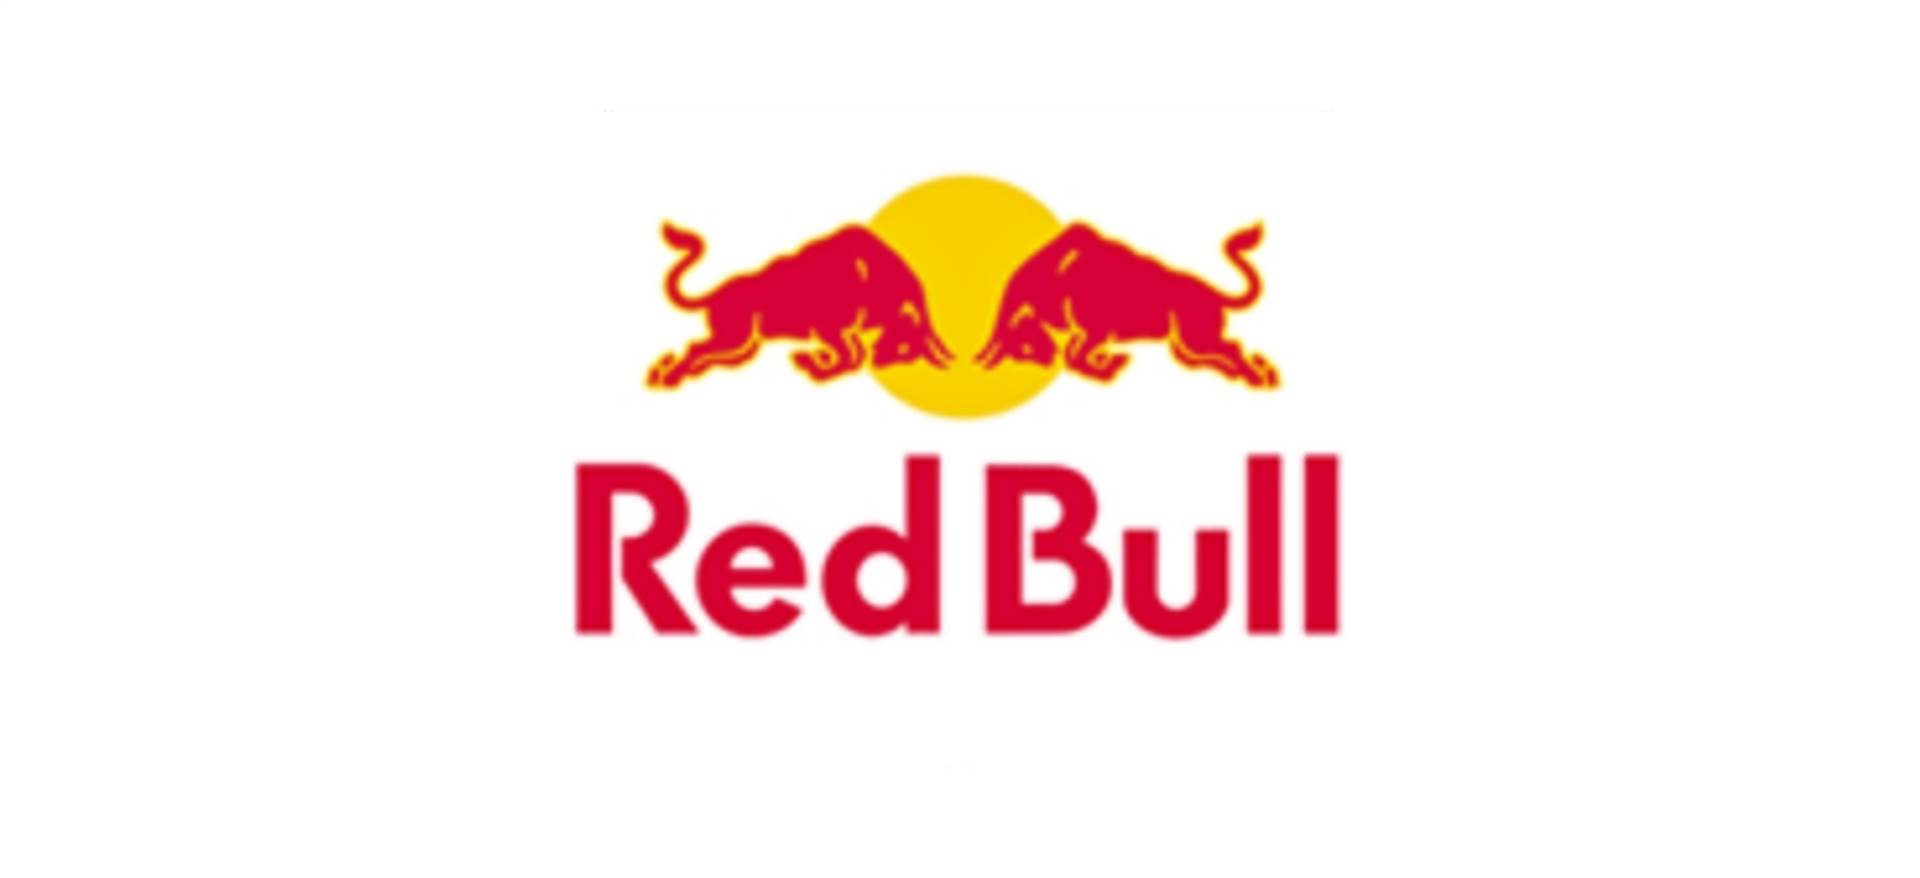 Red Bull back in style at the Gran Premio Nuvolari 2020